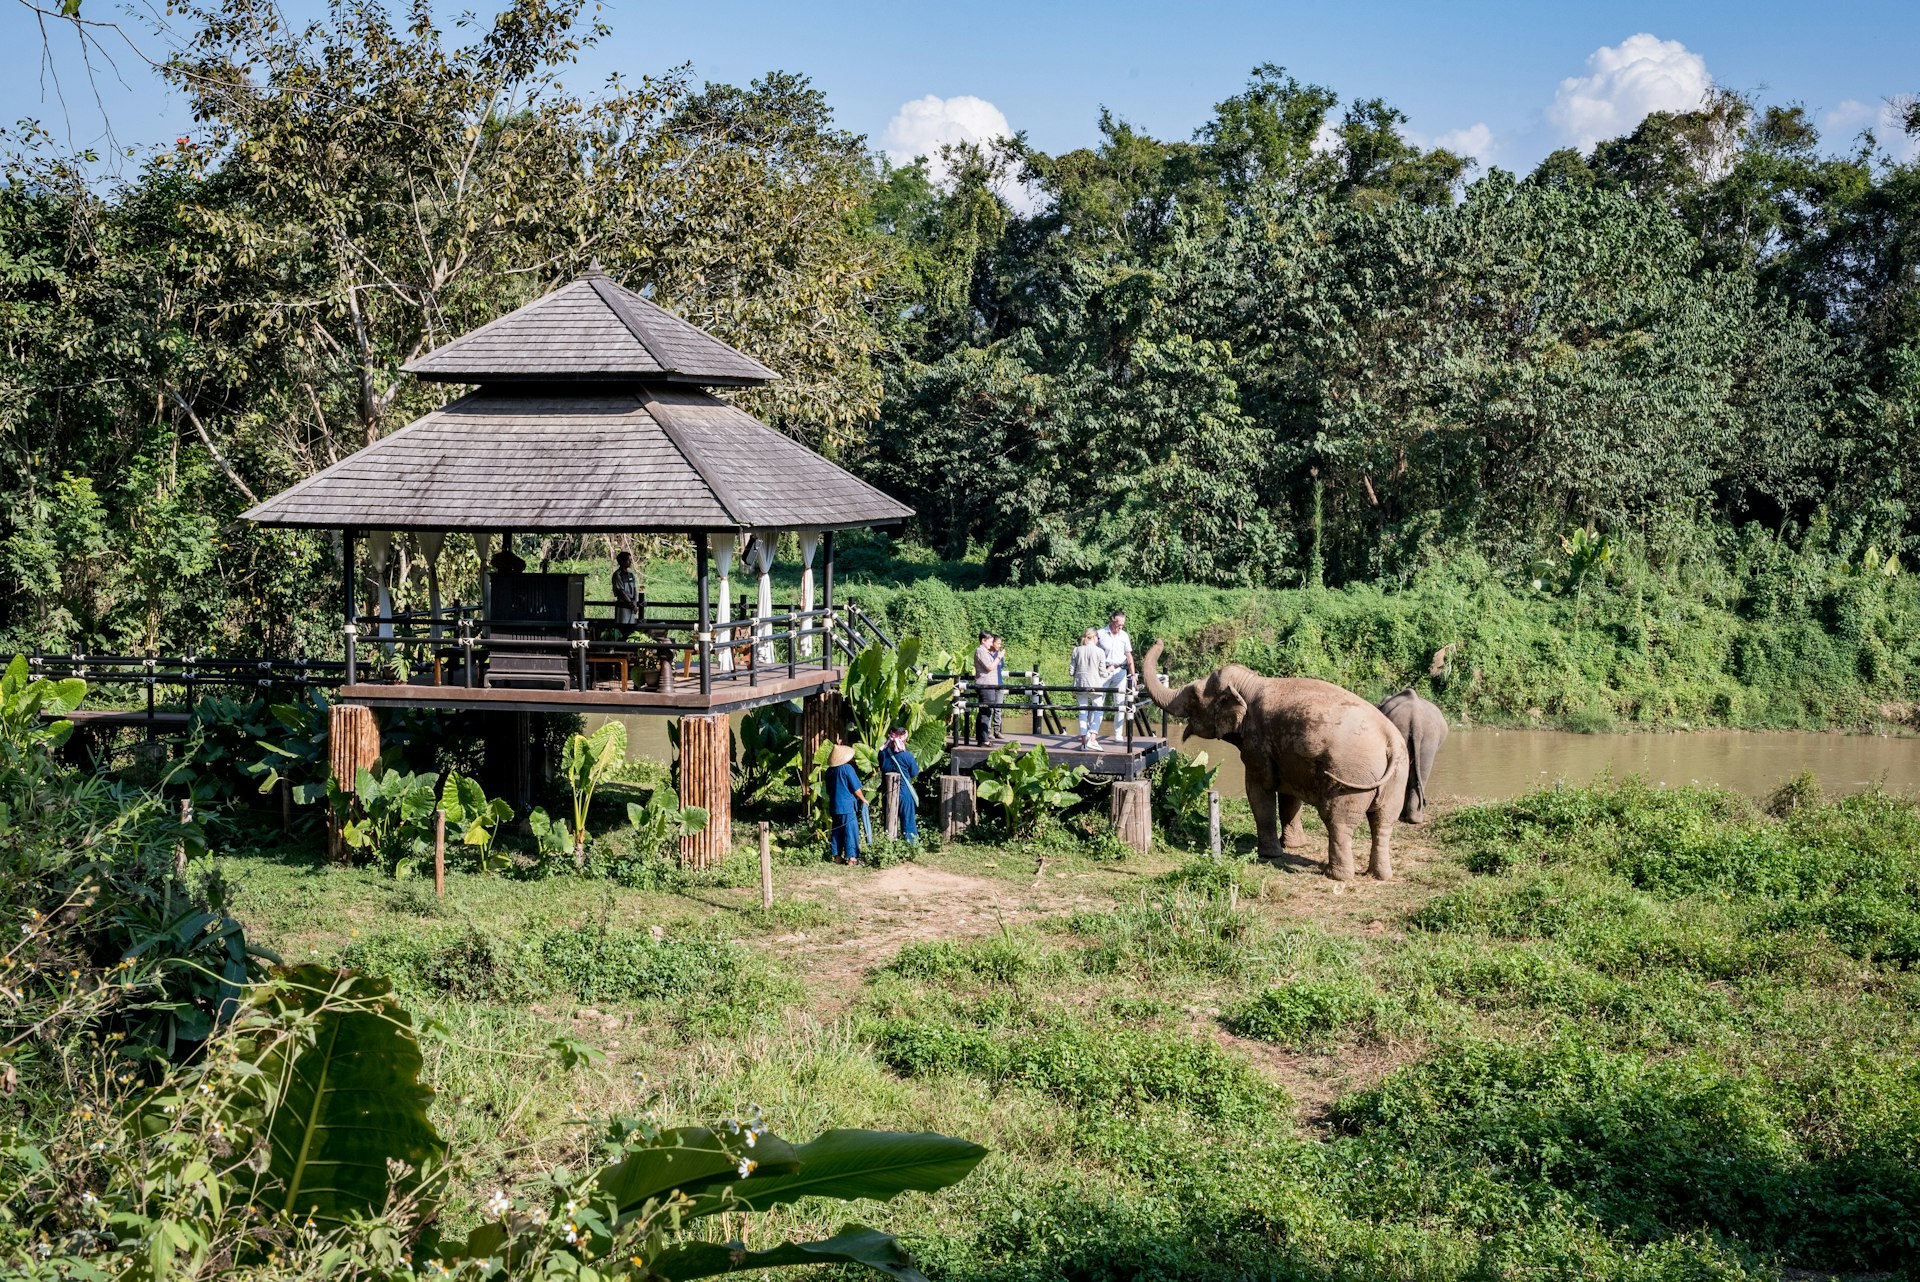 Pessoas ficam em uma área de deck de madeira à beira do rio observando dois elefantes que andam livremente 